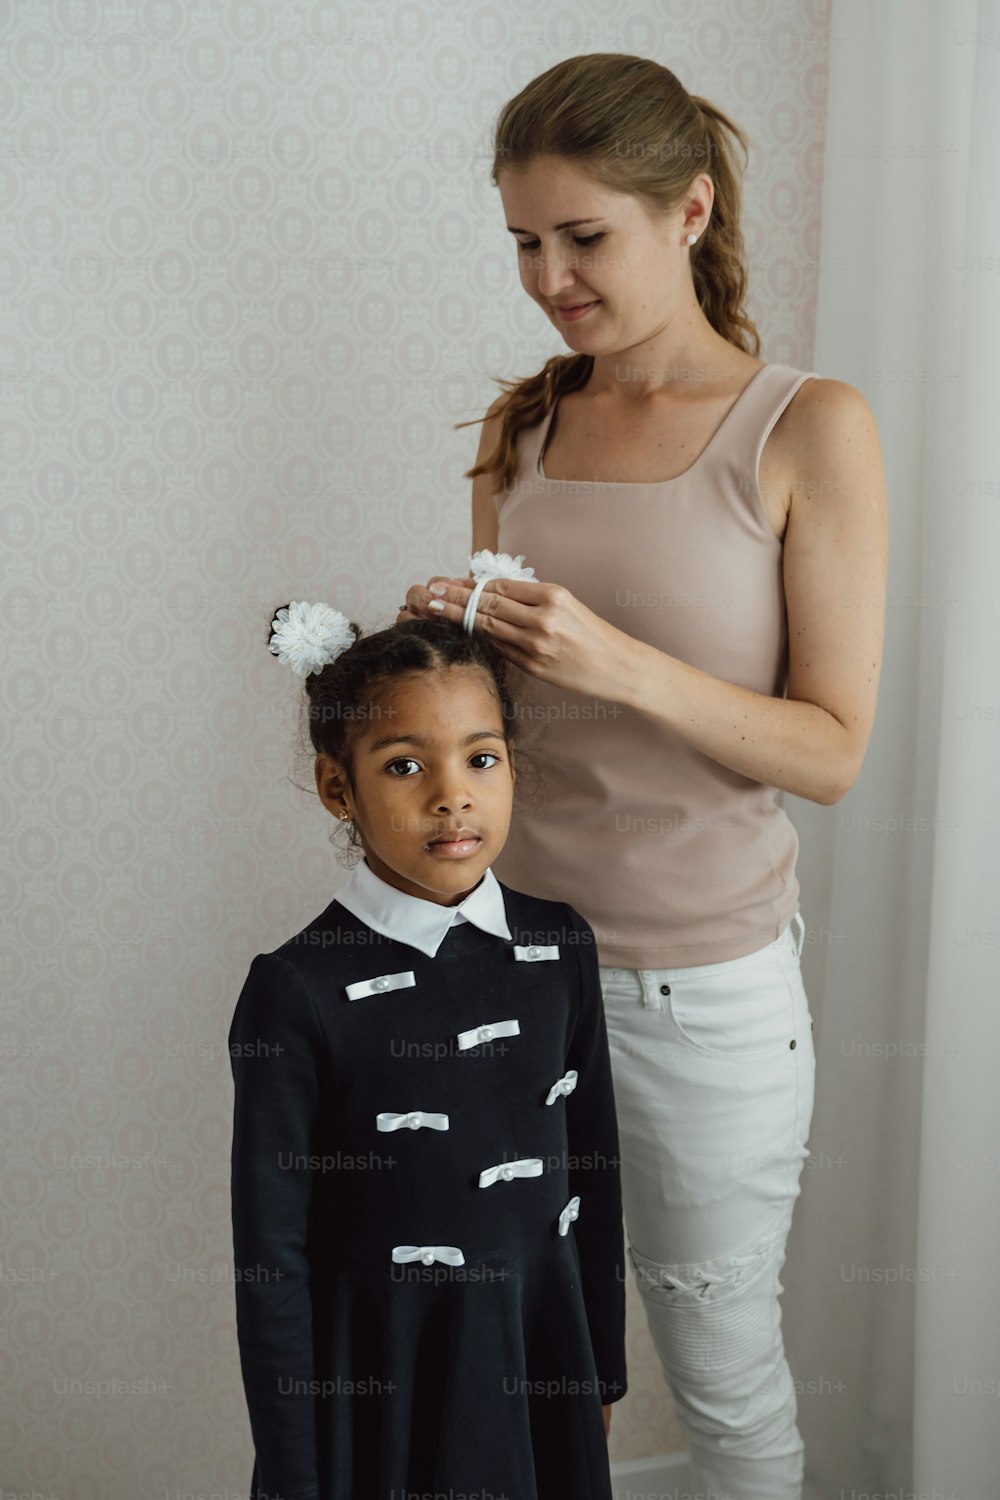 Una mujer peinando el cabello de una niña en una habitación